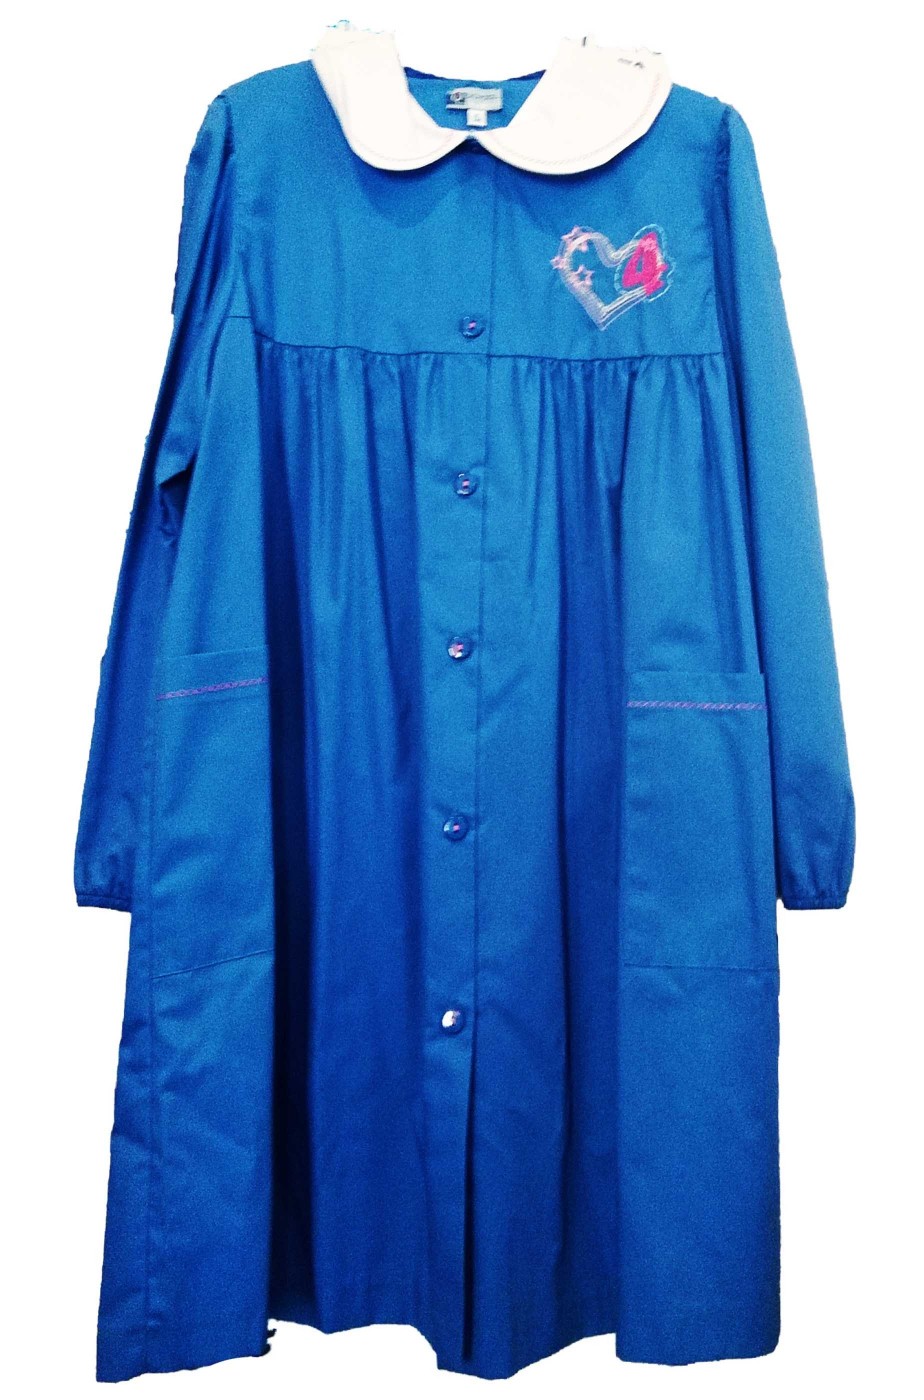 Grembiule scuola da bambina azzurro con polsi elastici